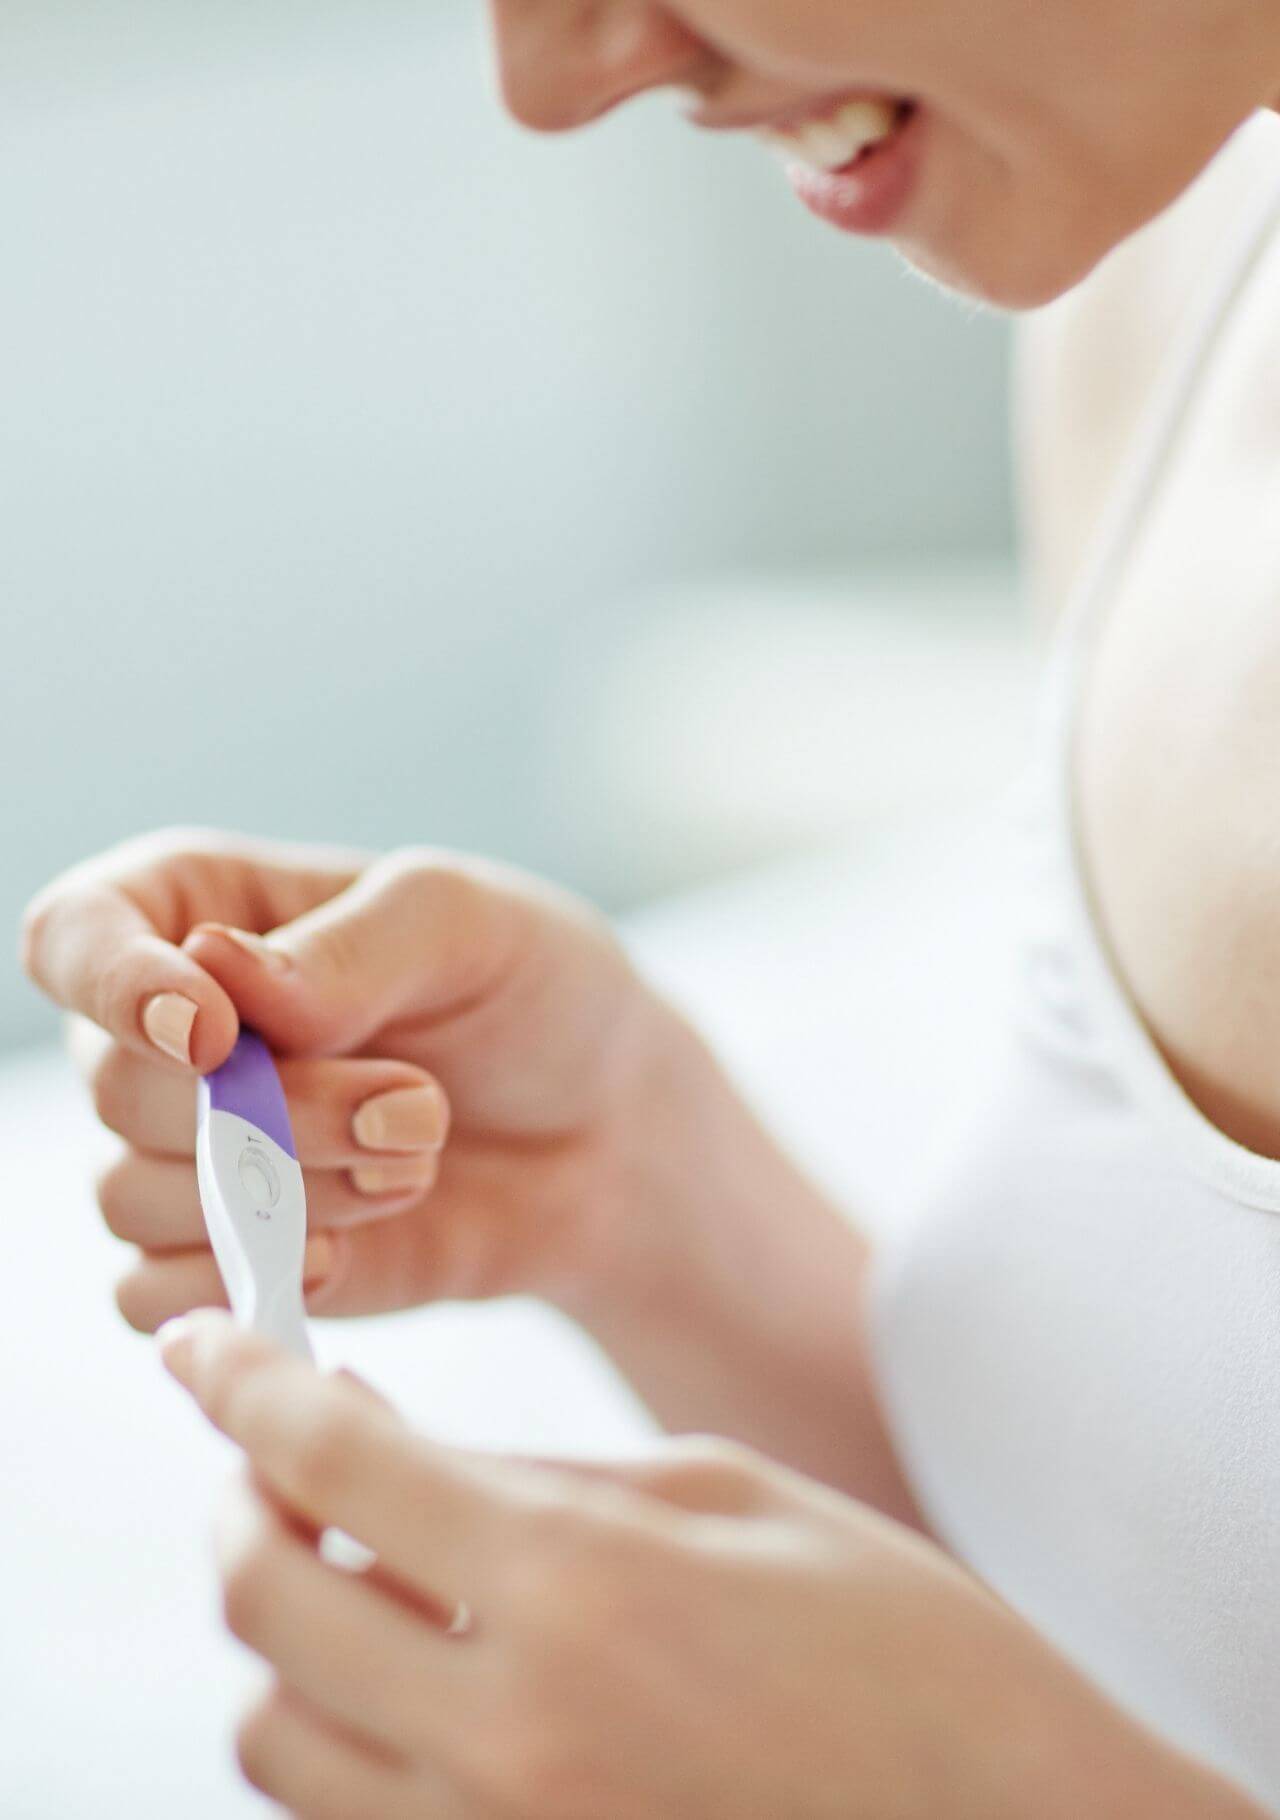 ¿Cuánto cuesta un test de embarazo?